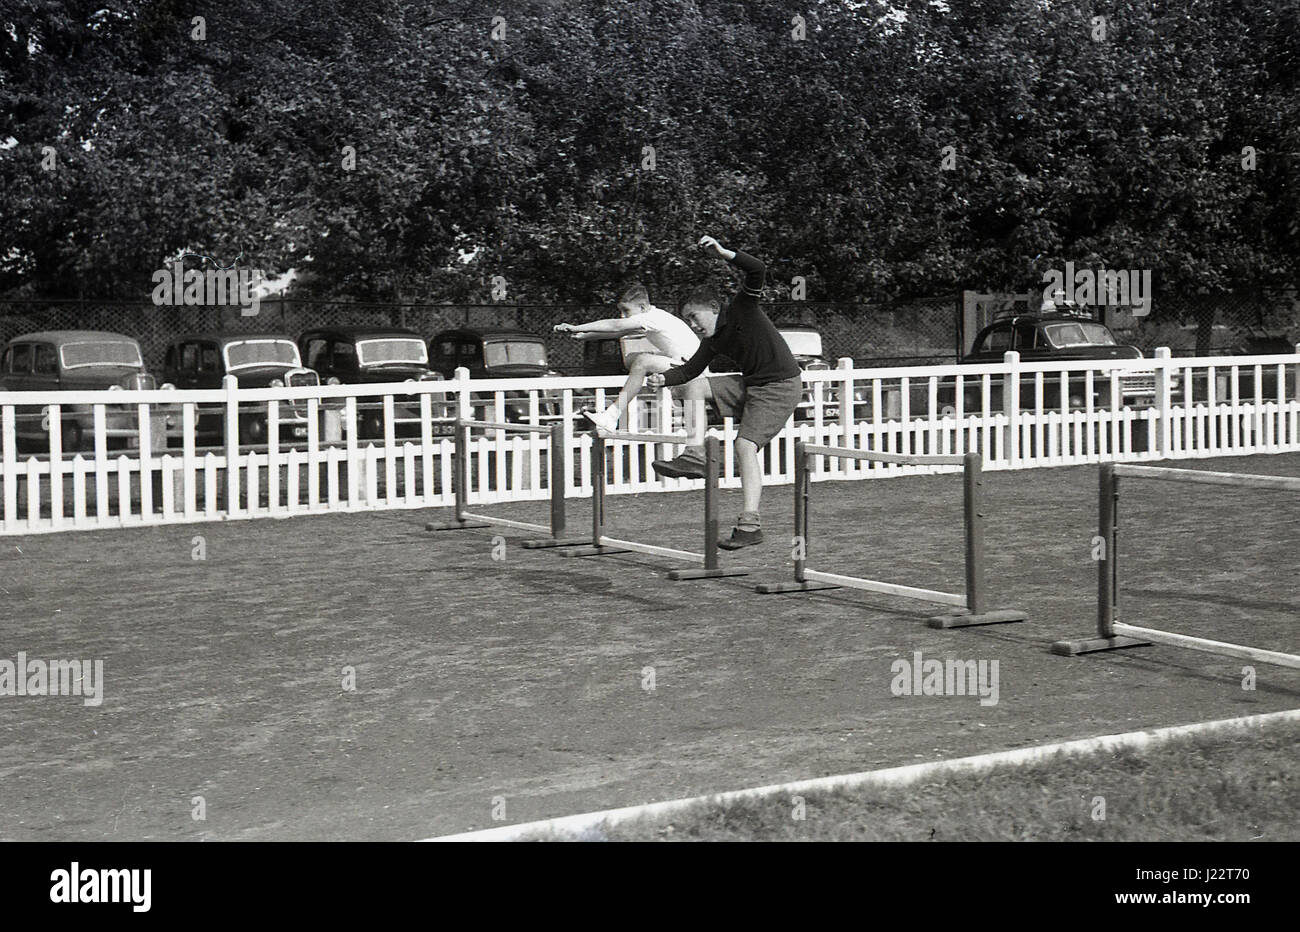 Anni '50, storico, fuori da una pista da corsa di cinder, due giovani ragazzi che gareggiano in una corsa di ostacoli saltano sopra barriere o ostacoli, con automobili dell'epoca parcheggiate in una linea dietro una recinzione bianca, Inghilterra, Regno Unito. Foto Stock